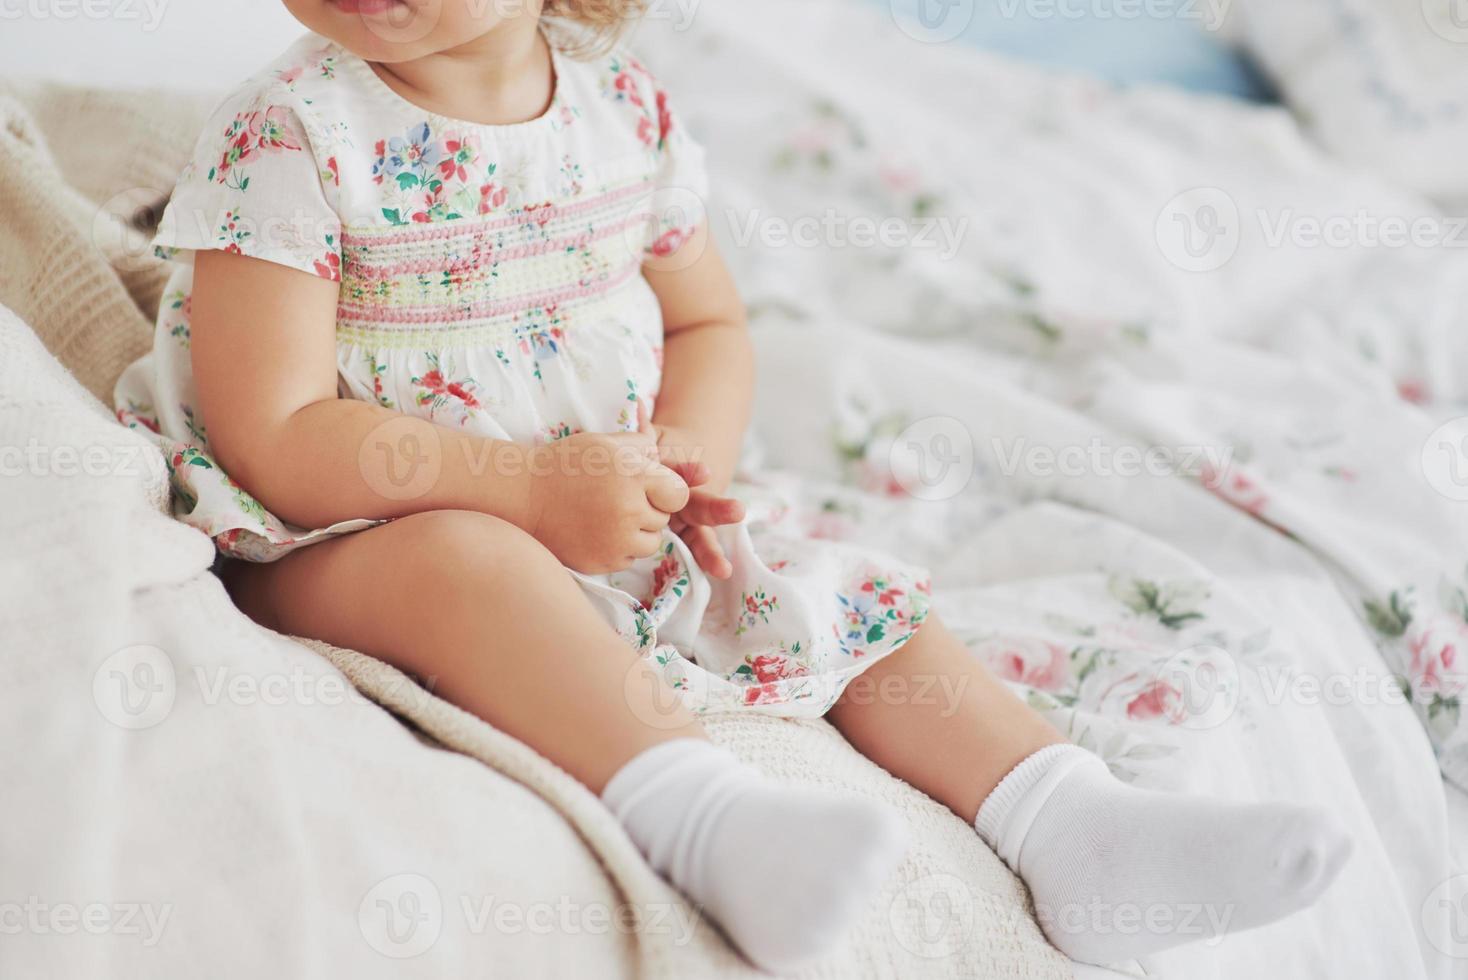 conceito de infância. menina com vestido bonito localização na cama brincando com brinquedos em casa. quarto infantil branco vintage foto